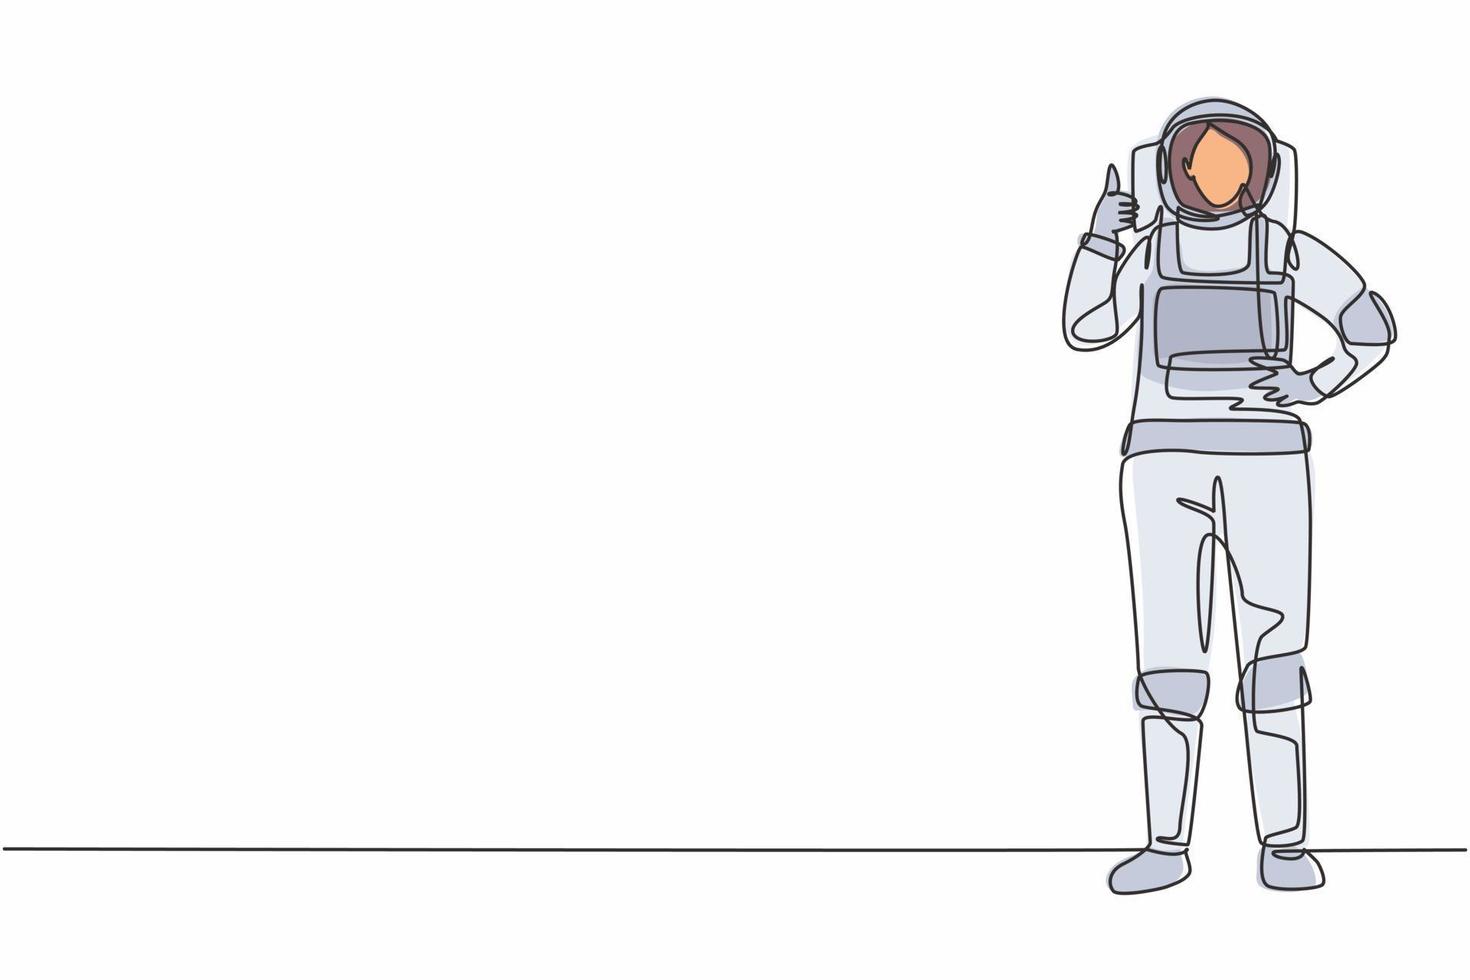 Una sola astronauta de dibujo de línea continua se para con un gesto de pulgar hacia arriba vistiendo un traje espacial que explora la tierra, la luna y otros planetas en el universo. Ilustración de vector de diseño gráfico de dibujo de una línea